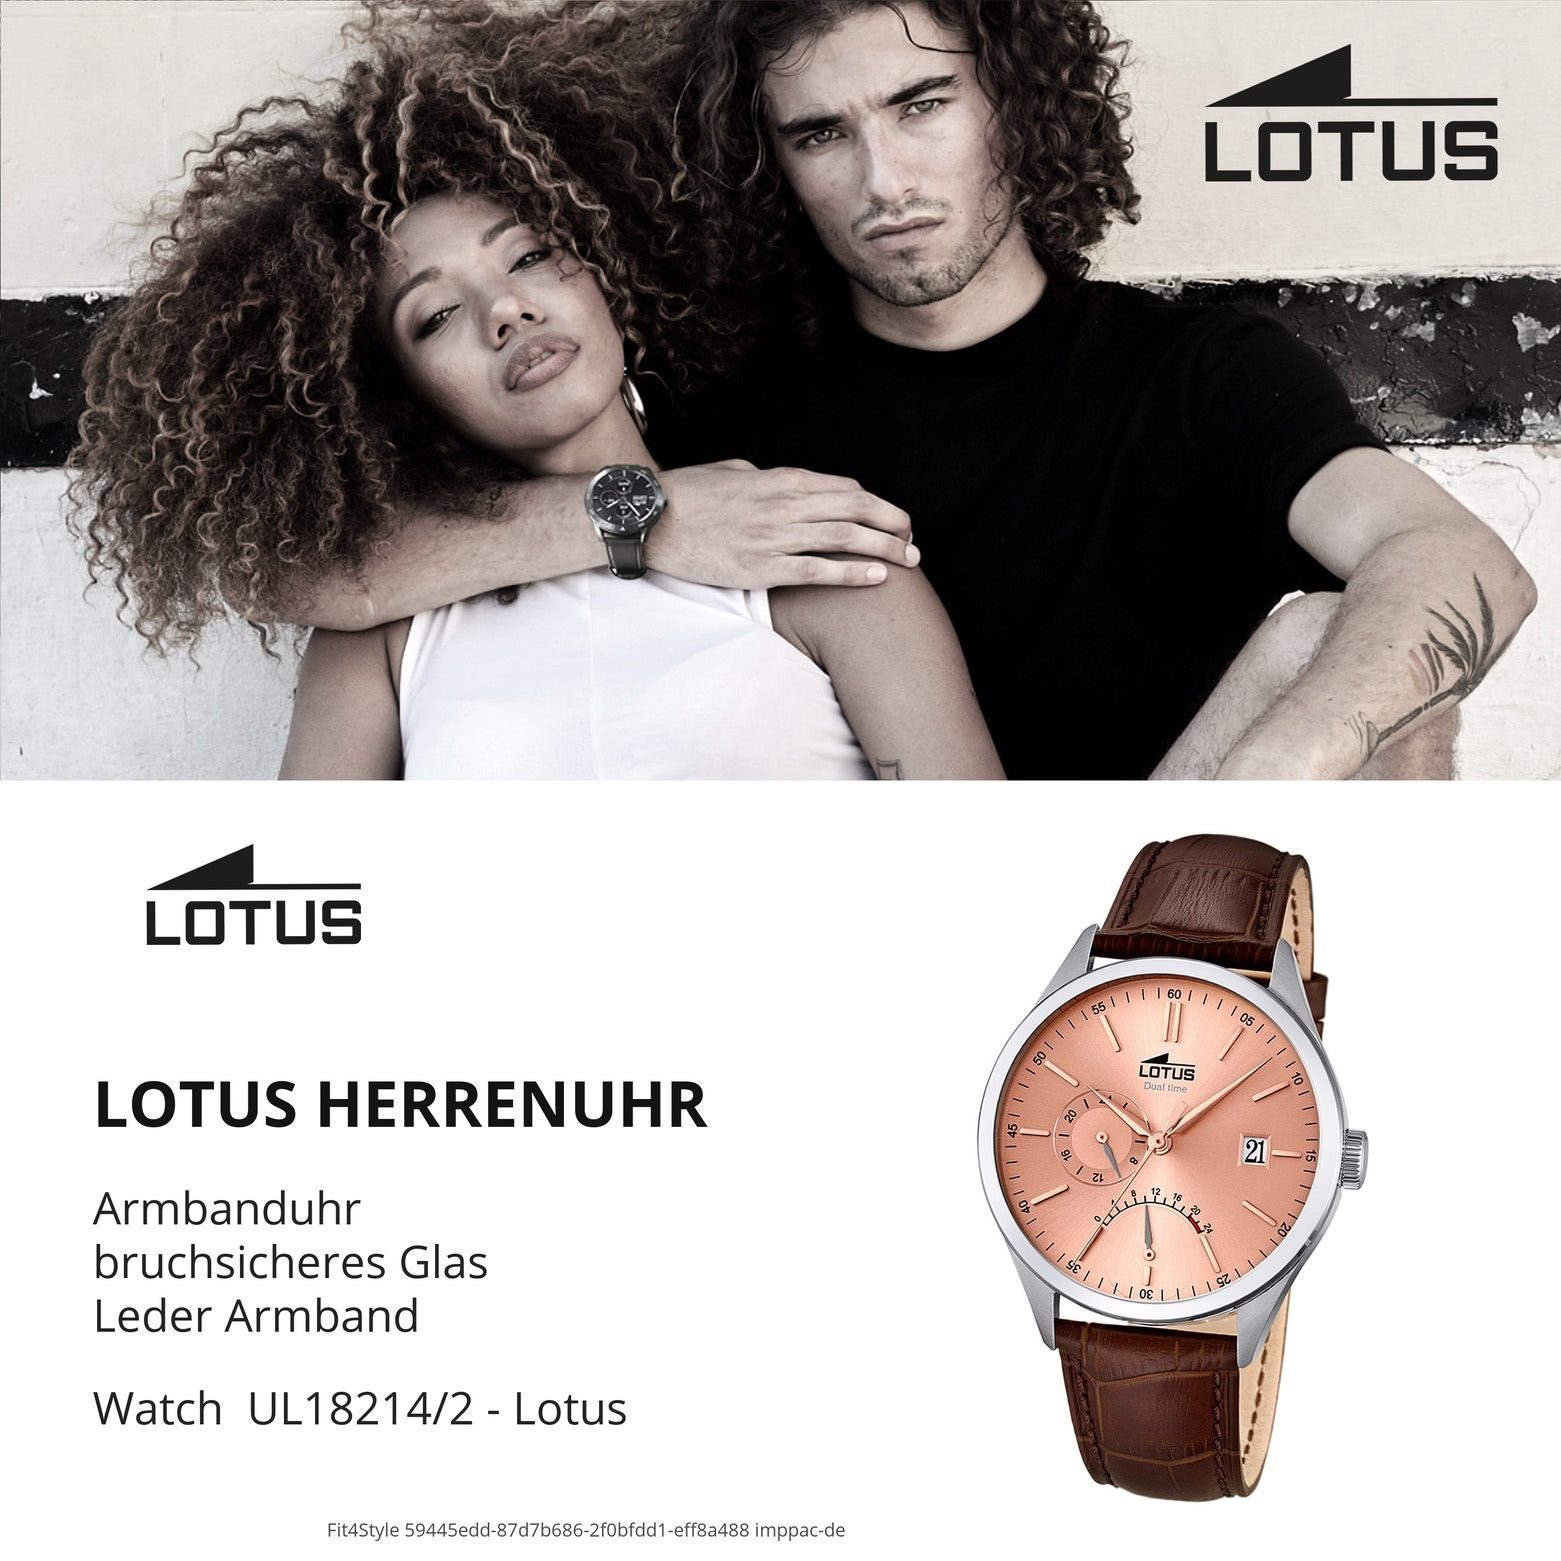 Herren Uhren Lotus Multifunktionsuhr UL18214/2 Lotus Herren Uhr Elegant L18214/2 Leder, Herren Armbanduhr rund, groß (ca. 42mm),